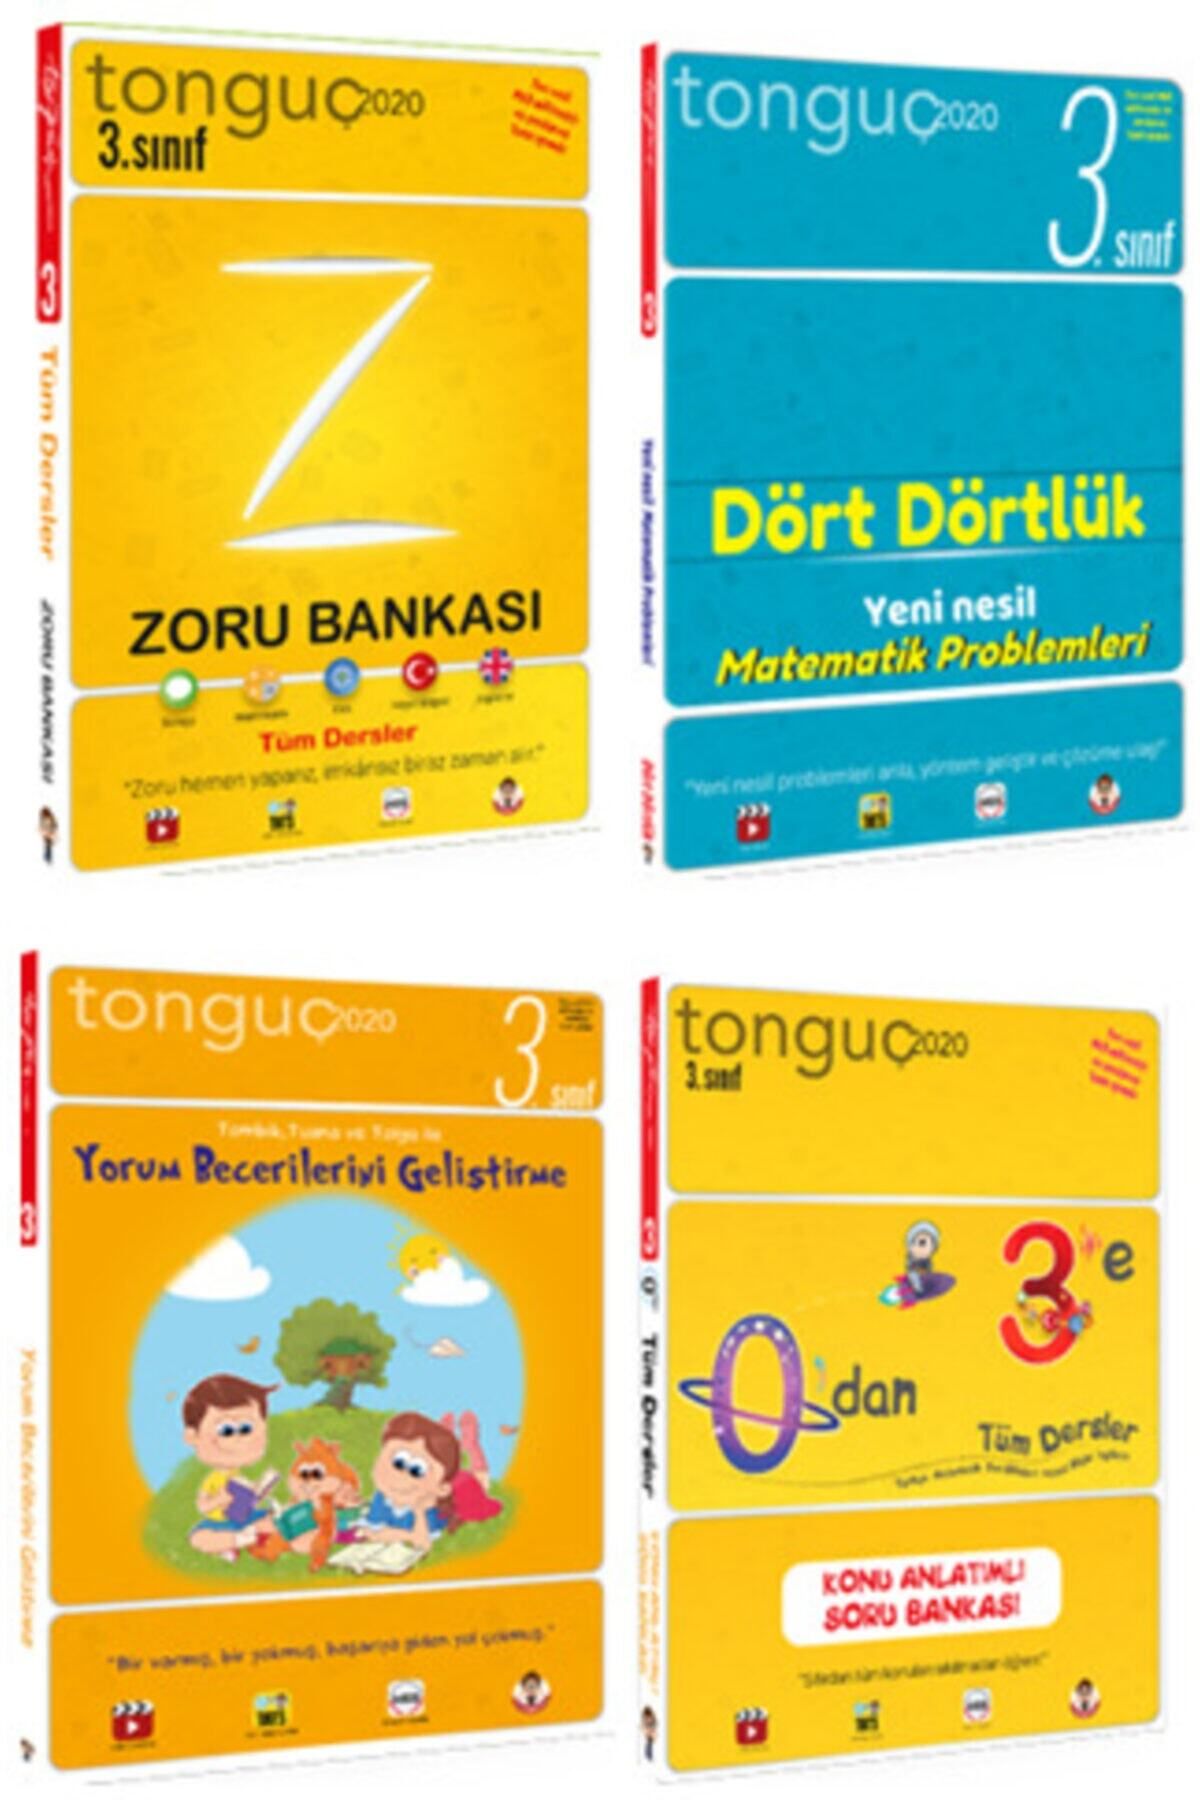 Tonguç Yayınları Tonguç 3. Sınıf Tüm Dersler Set